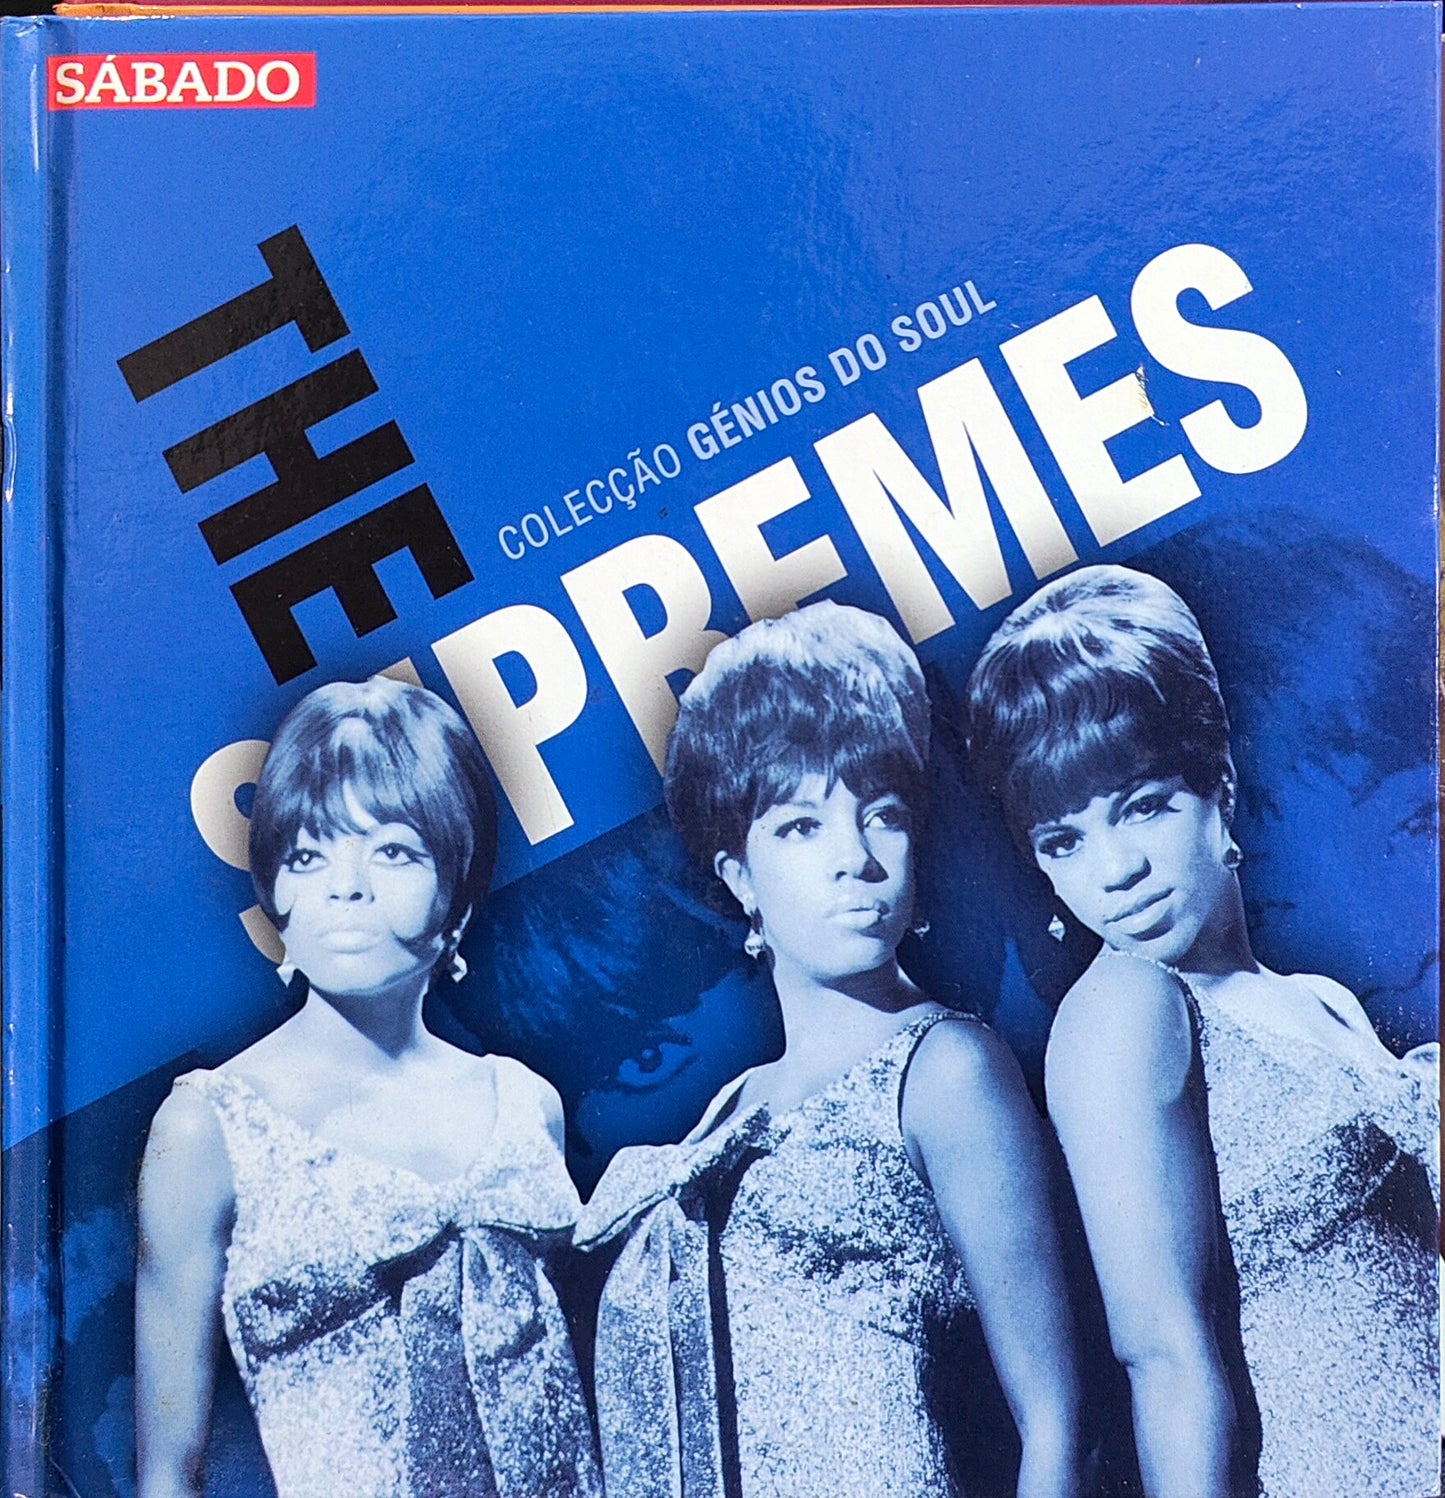 Buch + CD The Supremes – The Supremes – Colecção Génios Do Soul – Usado